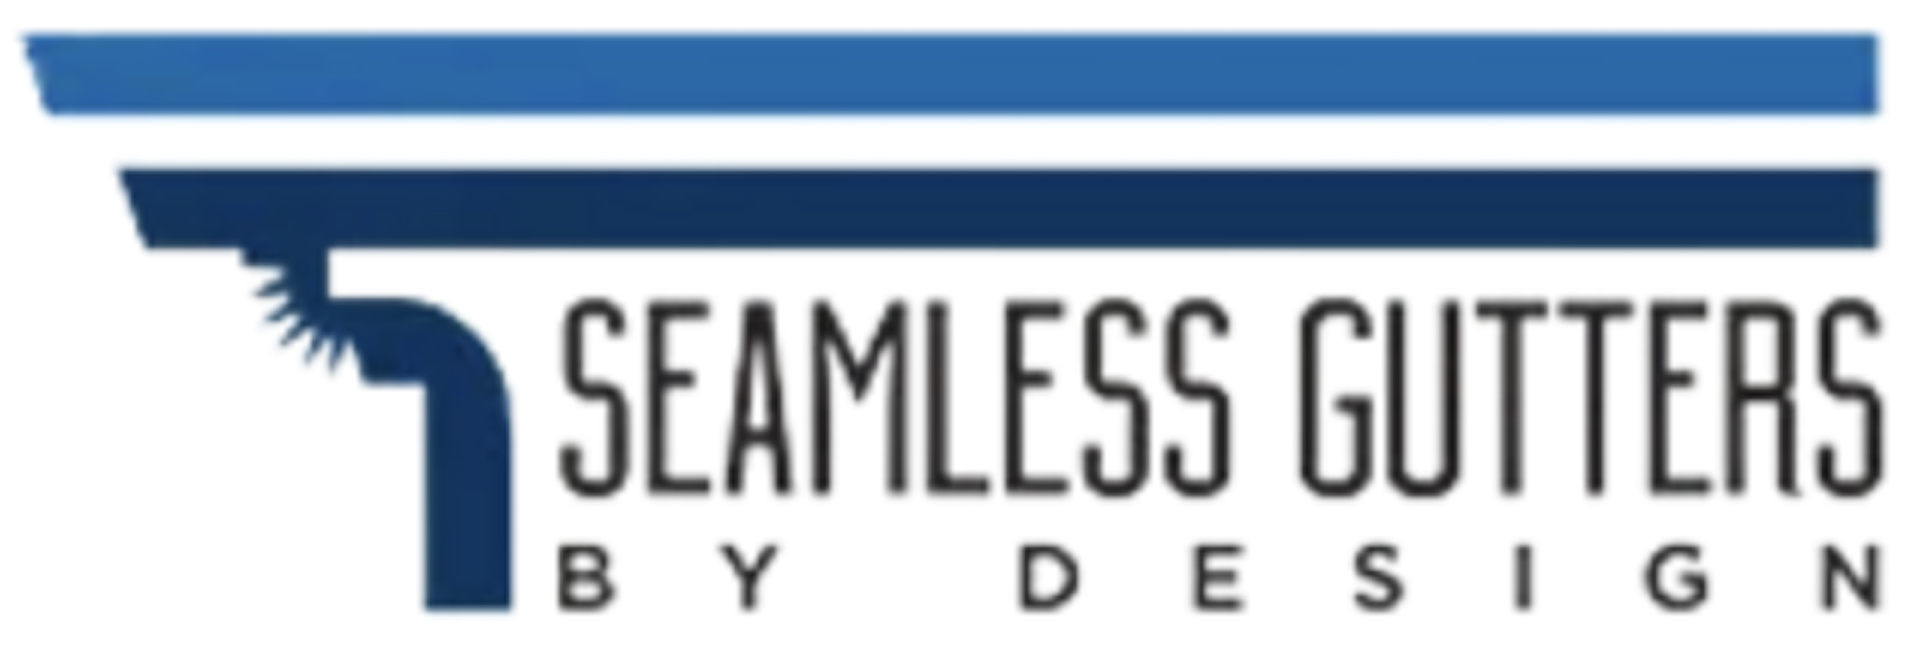 Seamless Gutters By Design, LLC Logo